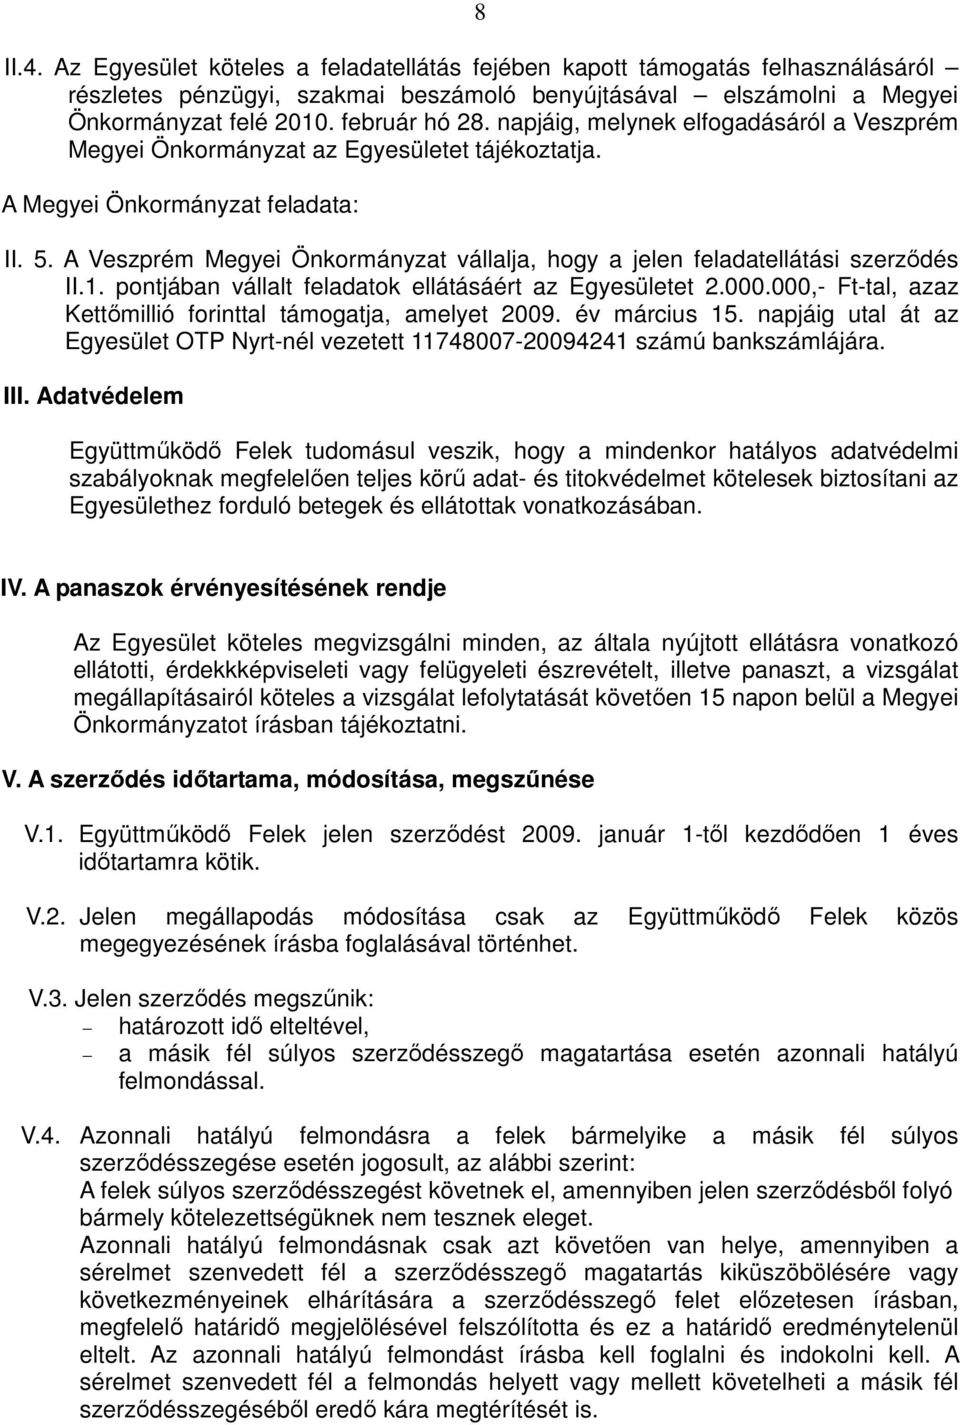 A Veszprém Megyei Önkormányzat vállalja, hogy a jelen feladatellátási szerződés II.1. pontjában vállalt feladatok ellátásáért az Egyesületet 2.000.